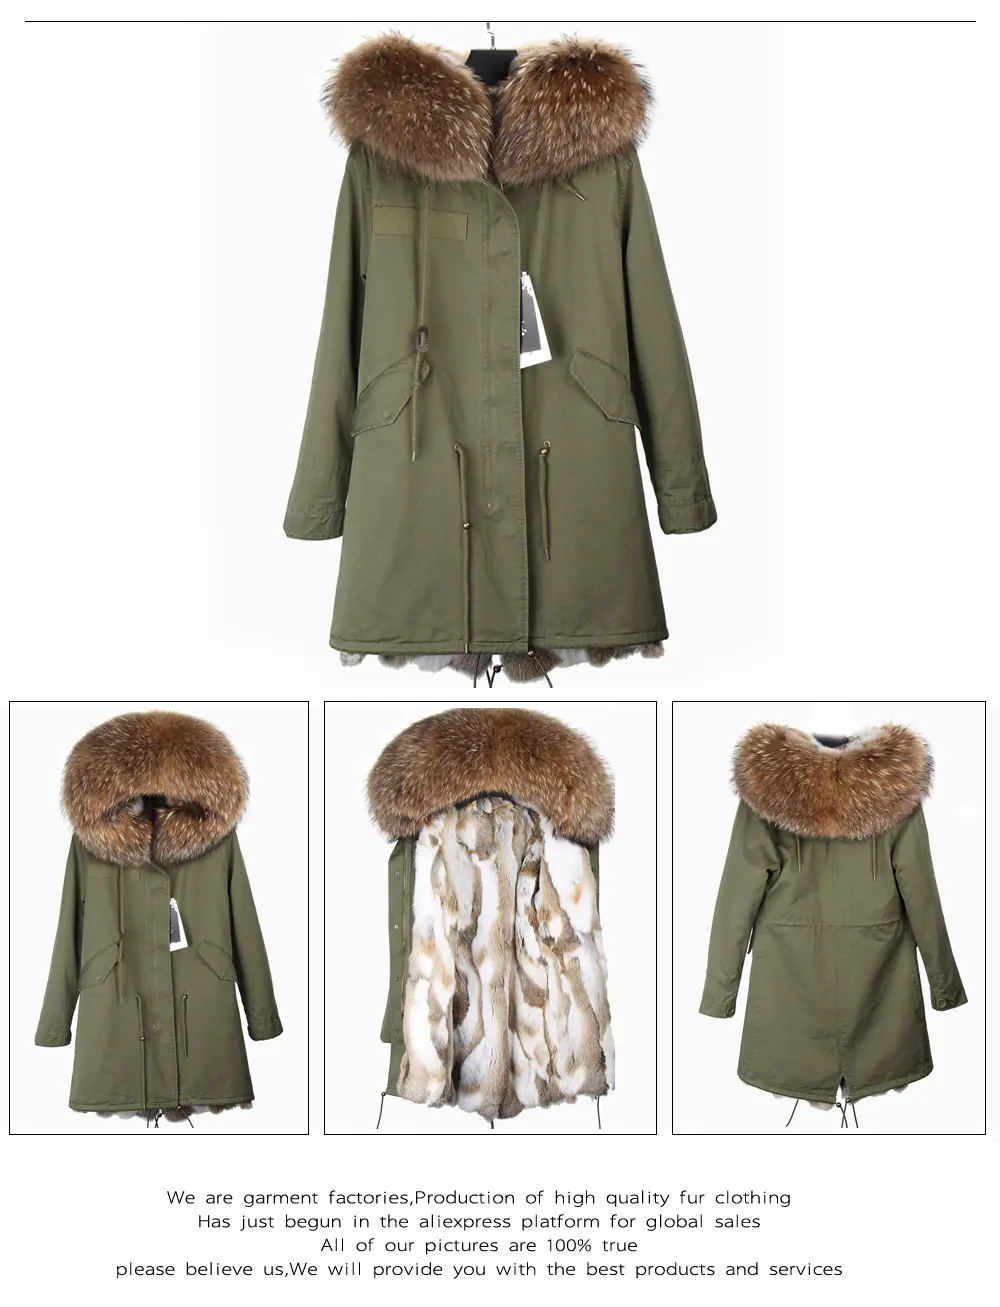 Брендовое пальто из натурального кроличьего меха, Длинная зимняя женская куртка со съемным воротником из меха енота, Толстая теплая меховая парка высокого качества